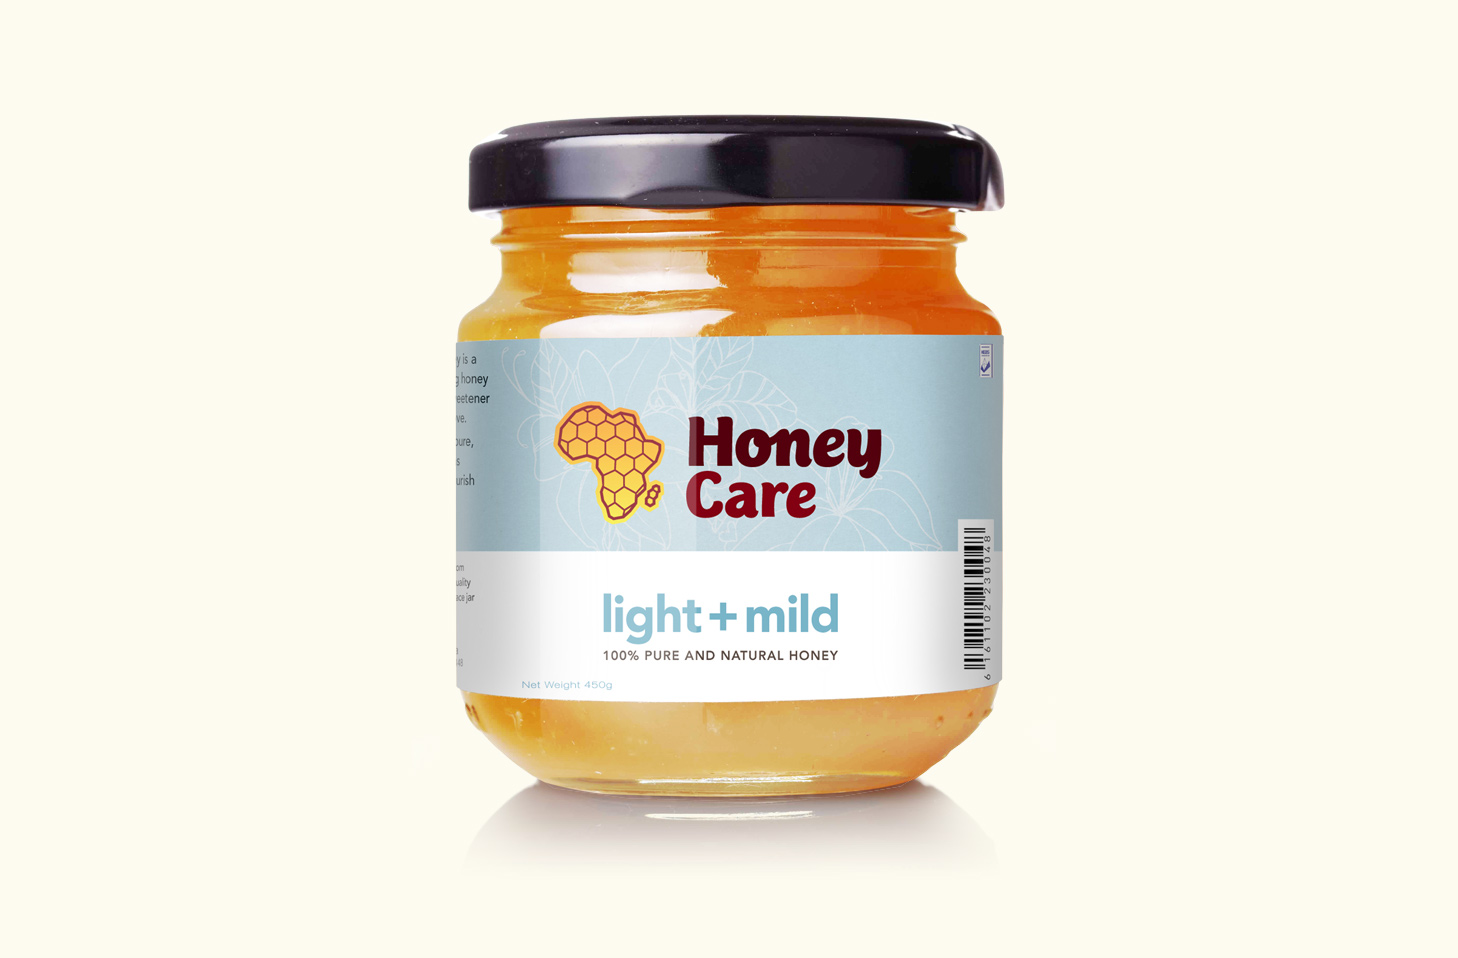 Honey packaging: light and mild.